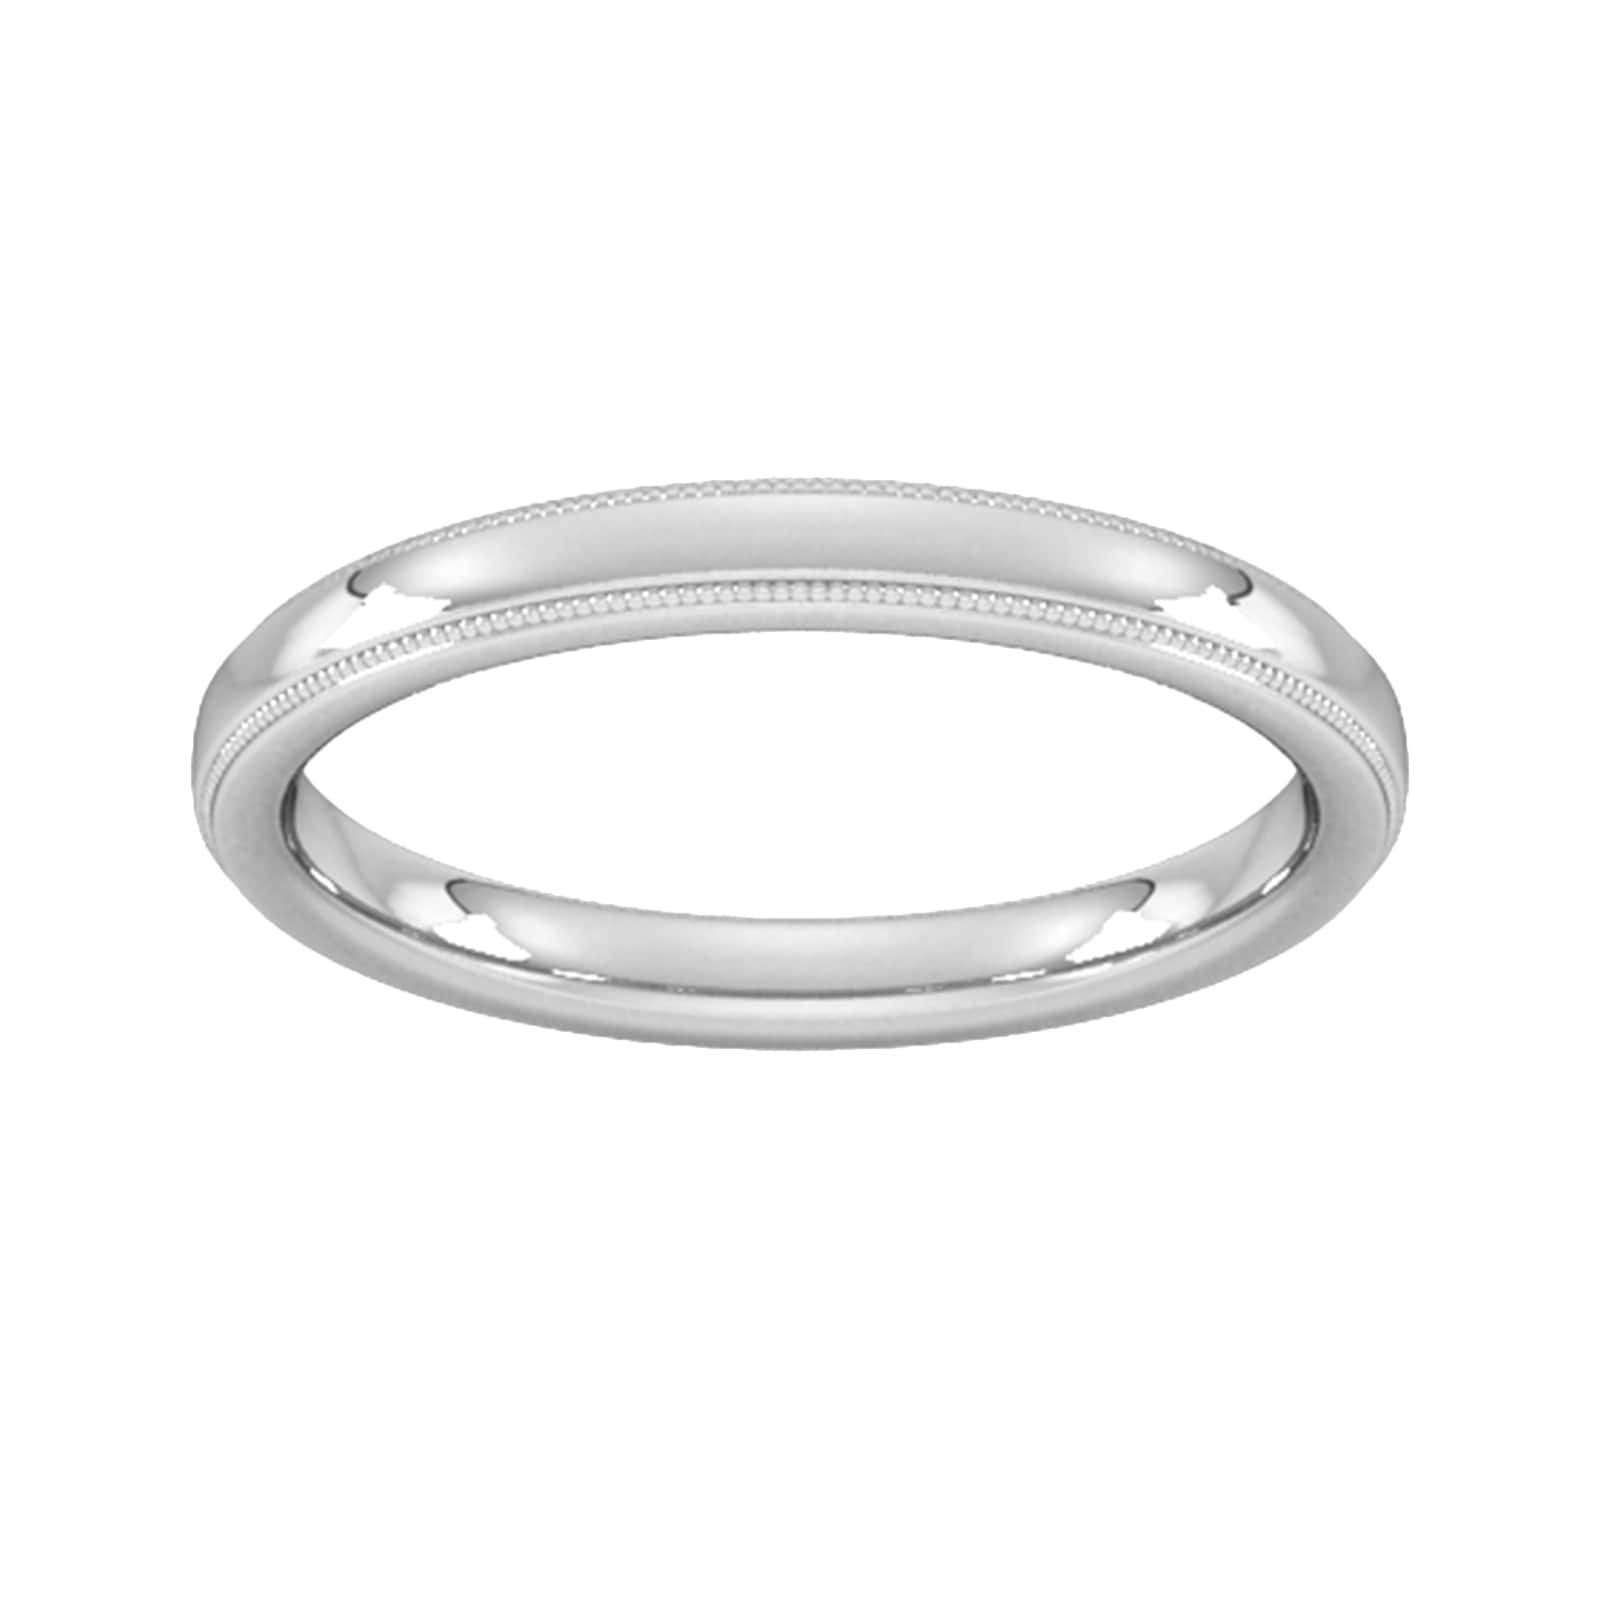 2.5mm Slight Court Standard Milgrain Edge Wedding Ring In 9 Carat White Gold - Ring Size M